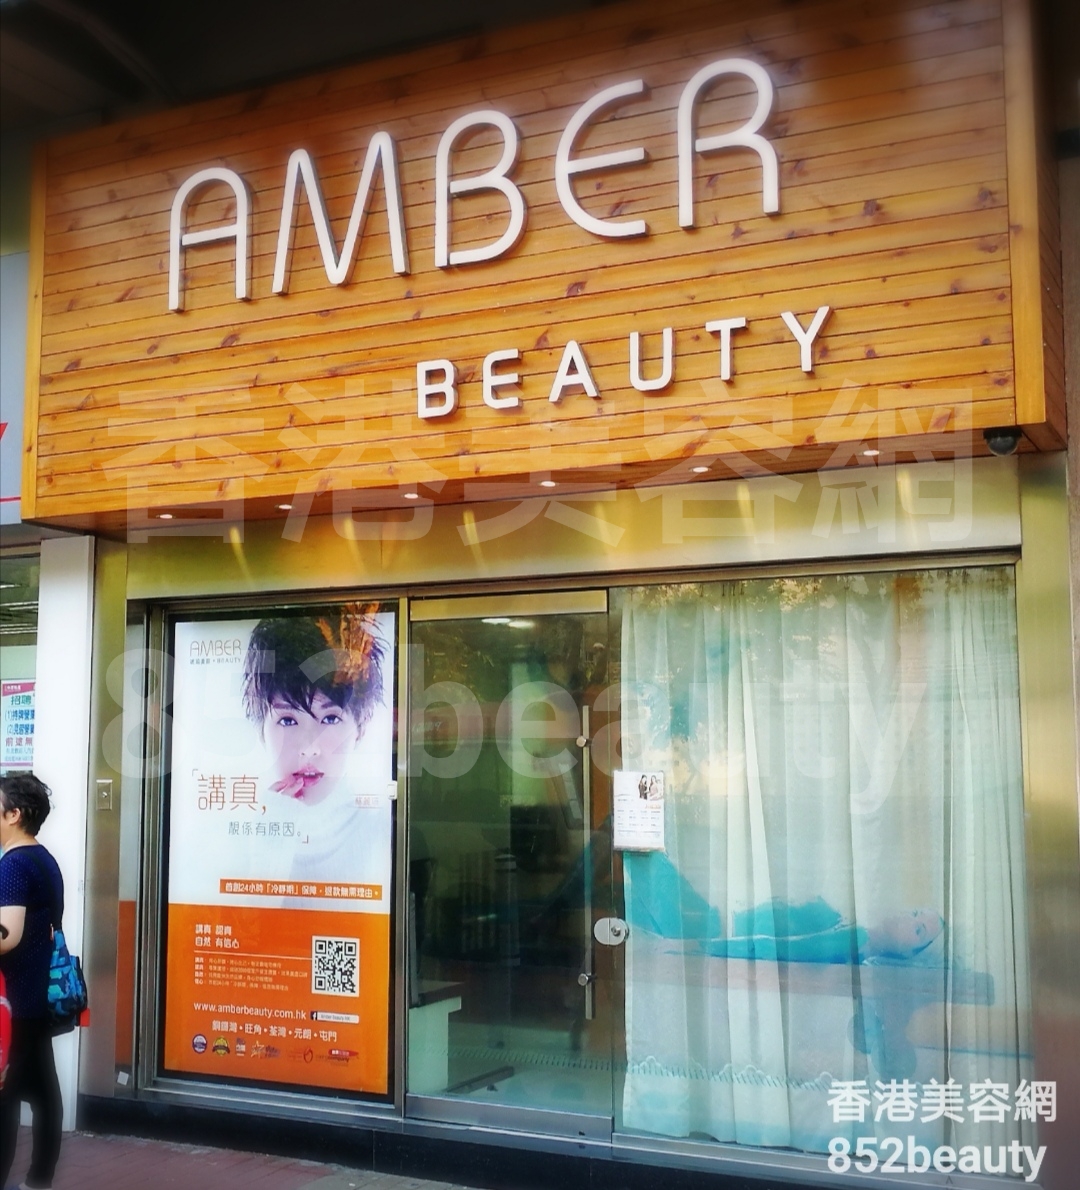 香港美容網 Hong Kong Beauty Salon 美容院 / 美容師: 琥珀美容 Amber Beauty (屯門金安大廈)